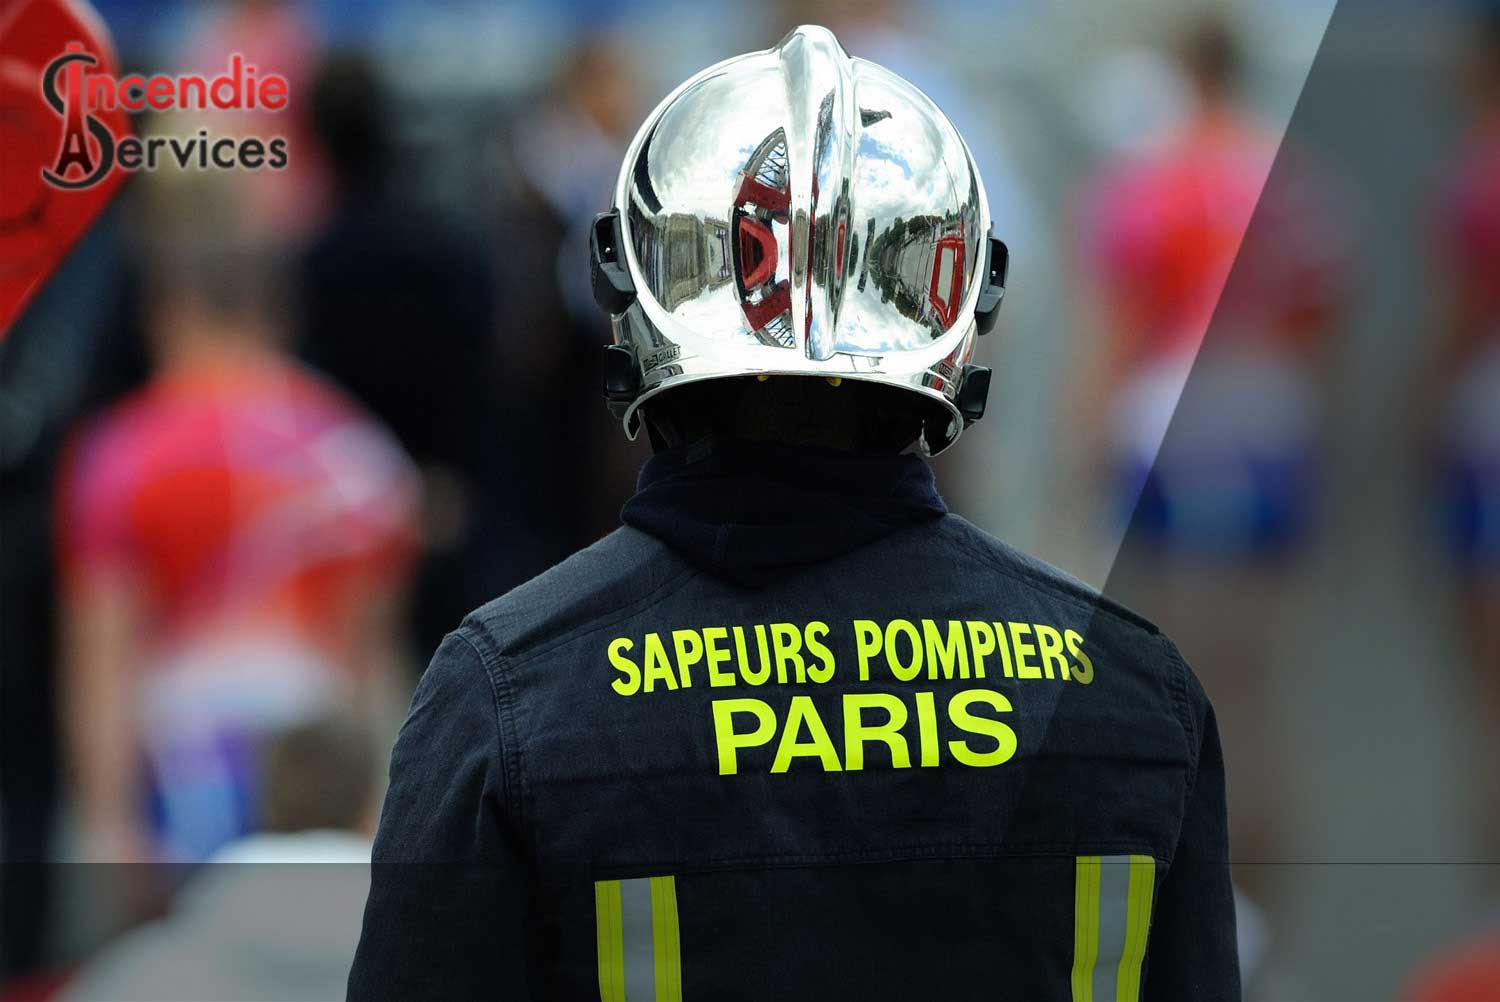 MAINTENANCE EXTINCTEUR PARIS 18 - Entreprise Certifiée | Incendie Services à Paris 75018